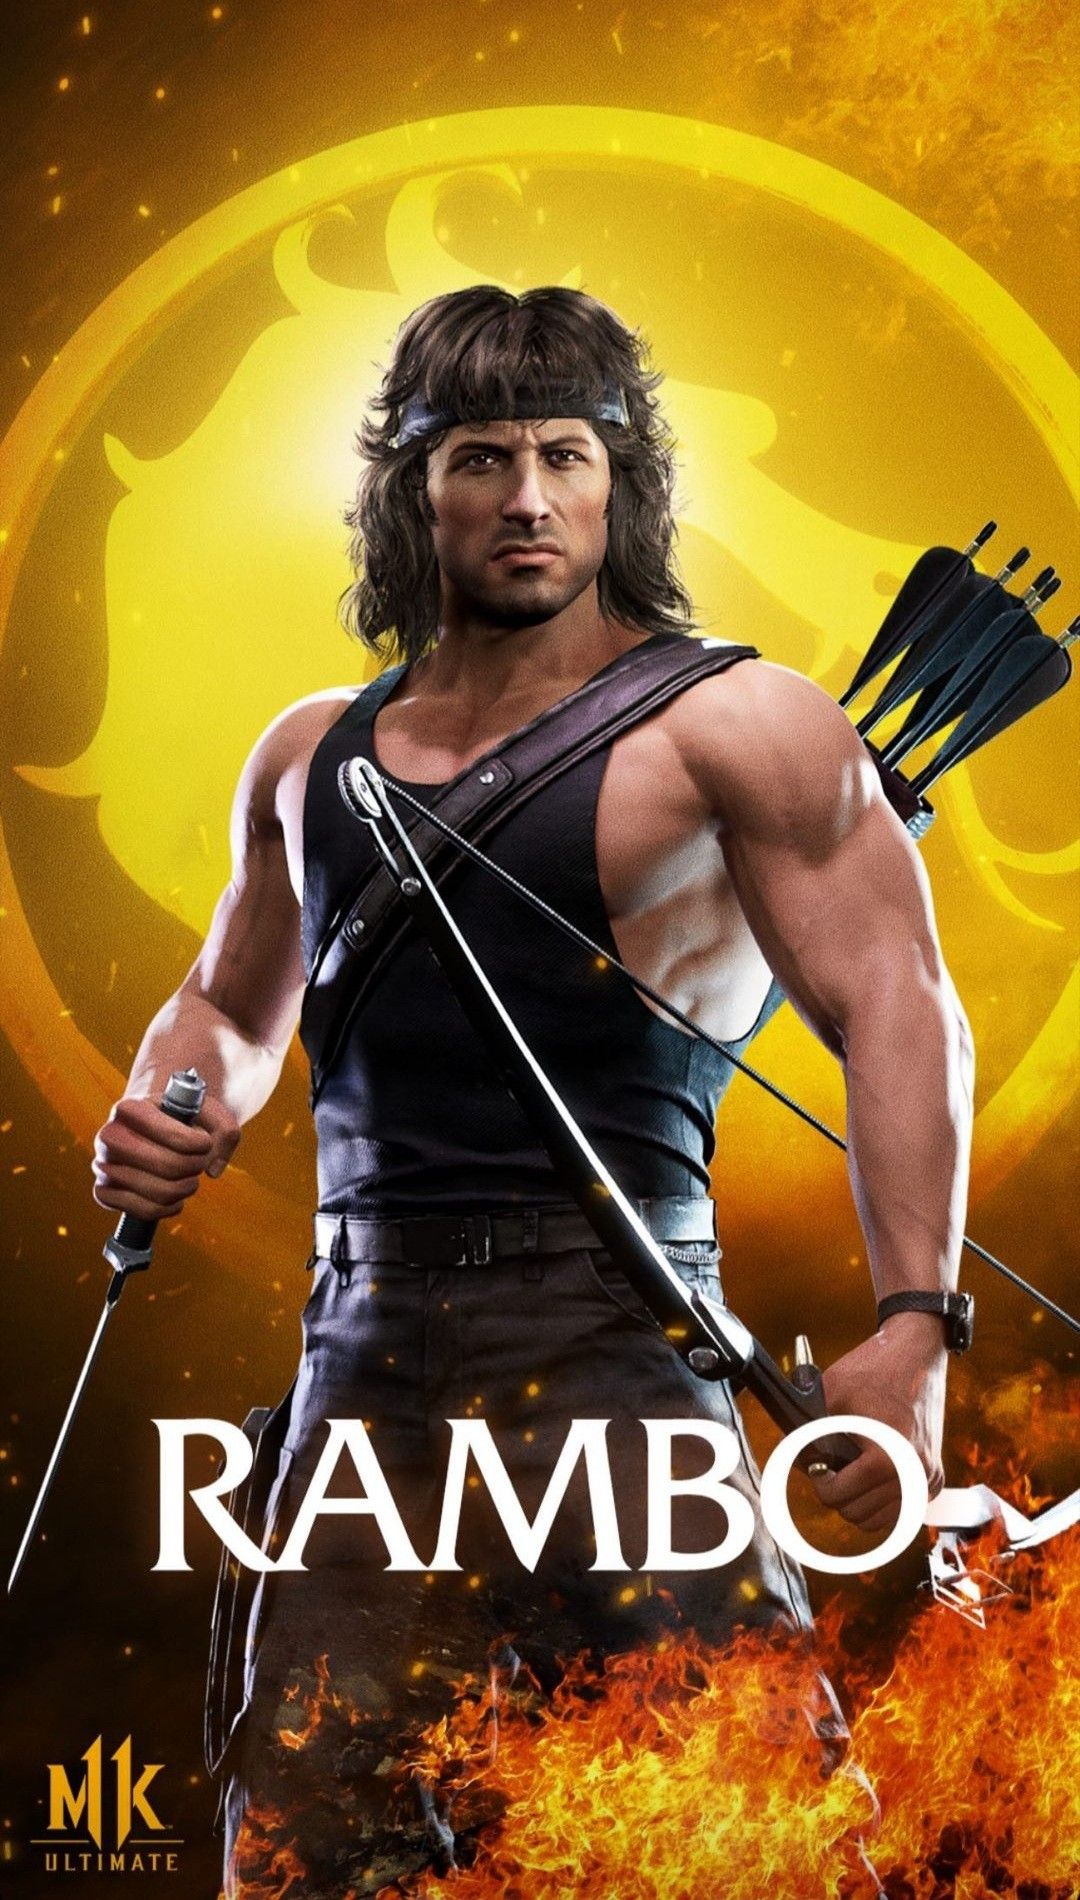 Rambo Mortal Kombat 11 Wallpapers